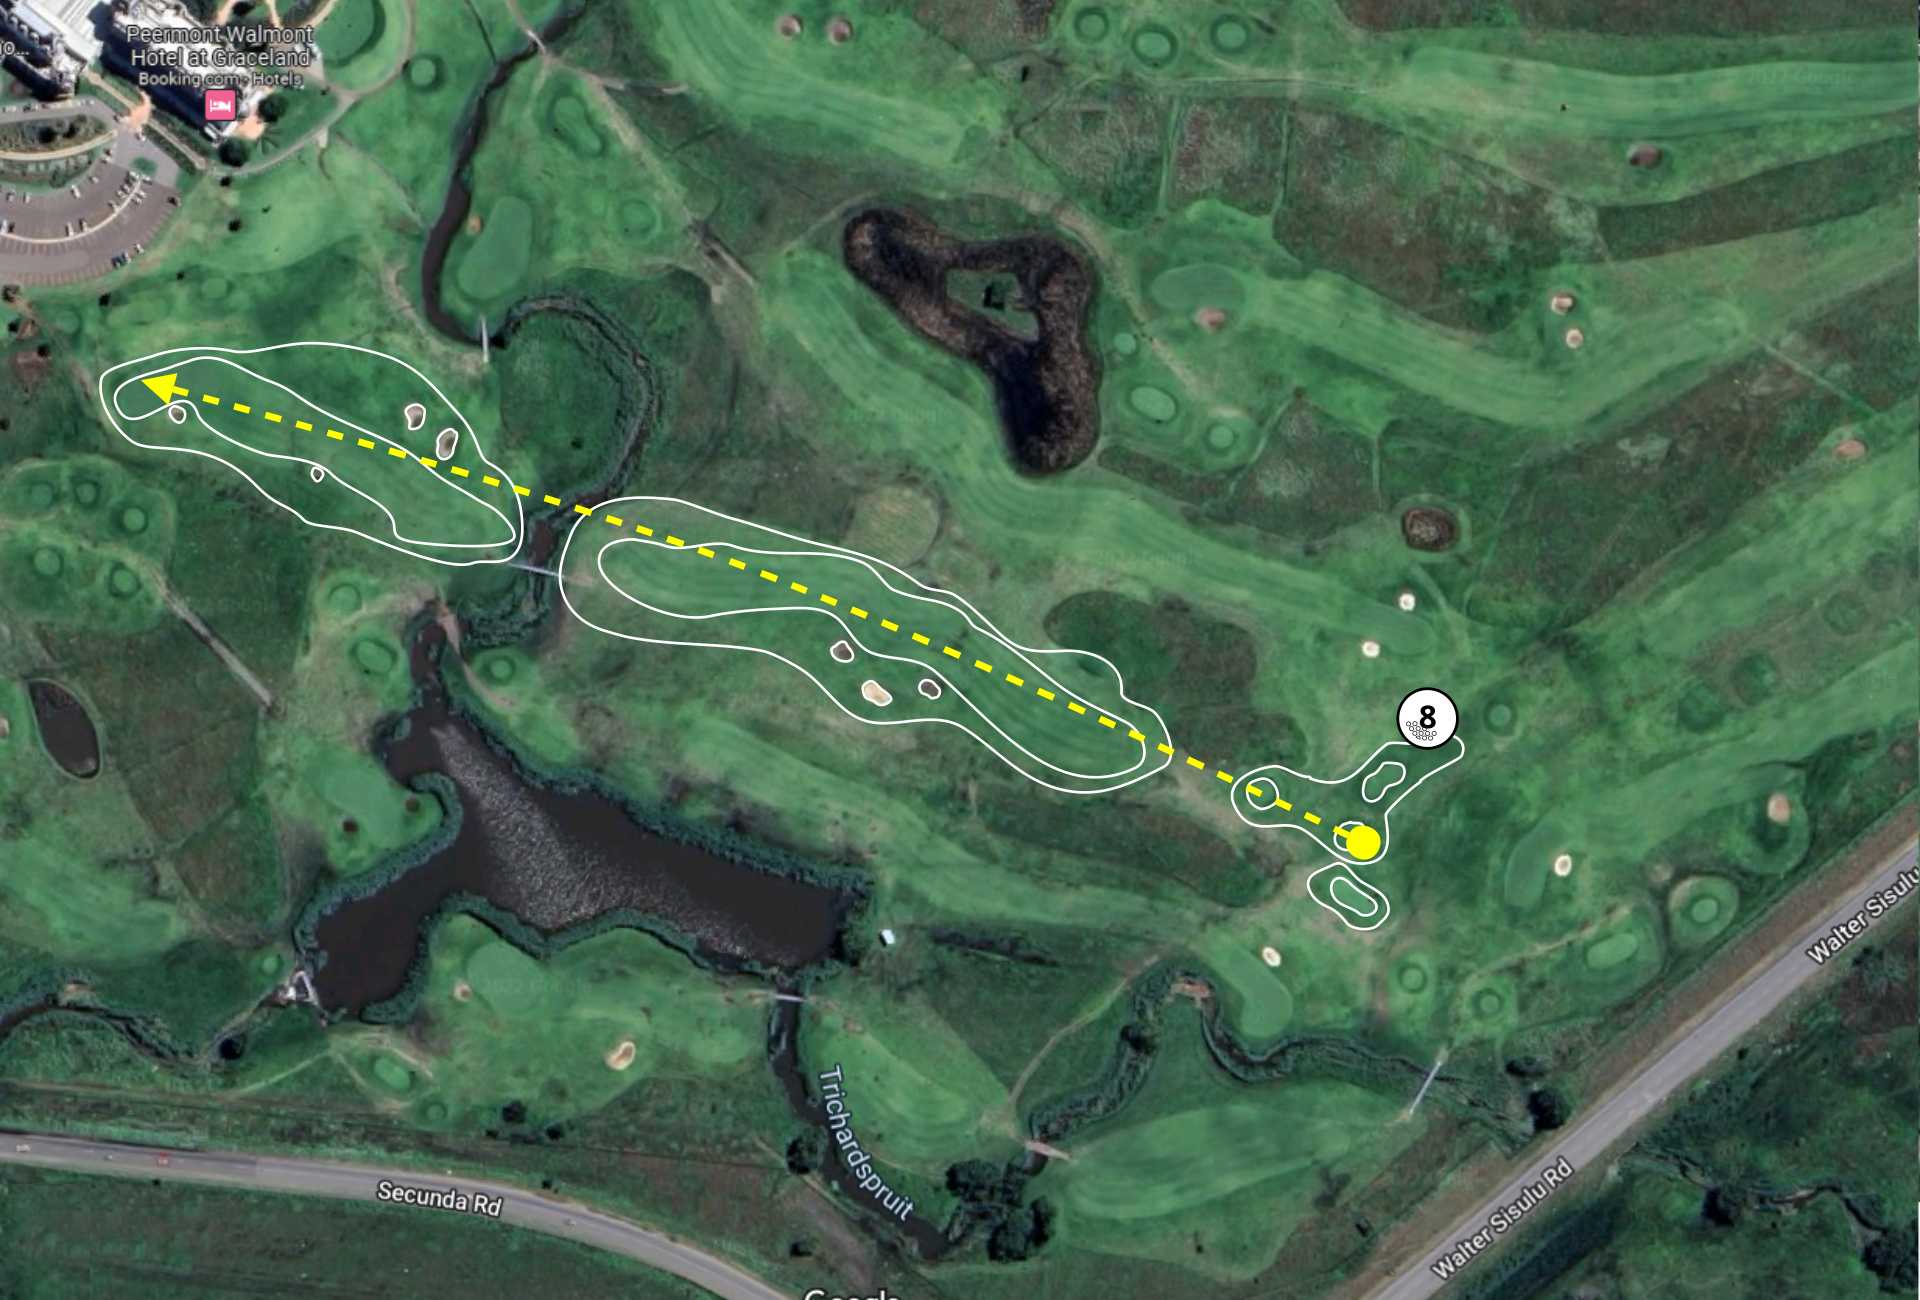 Graceland Golf Course Hole 5 layout